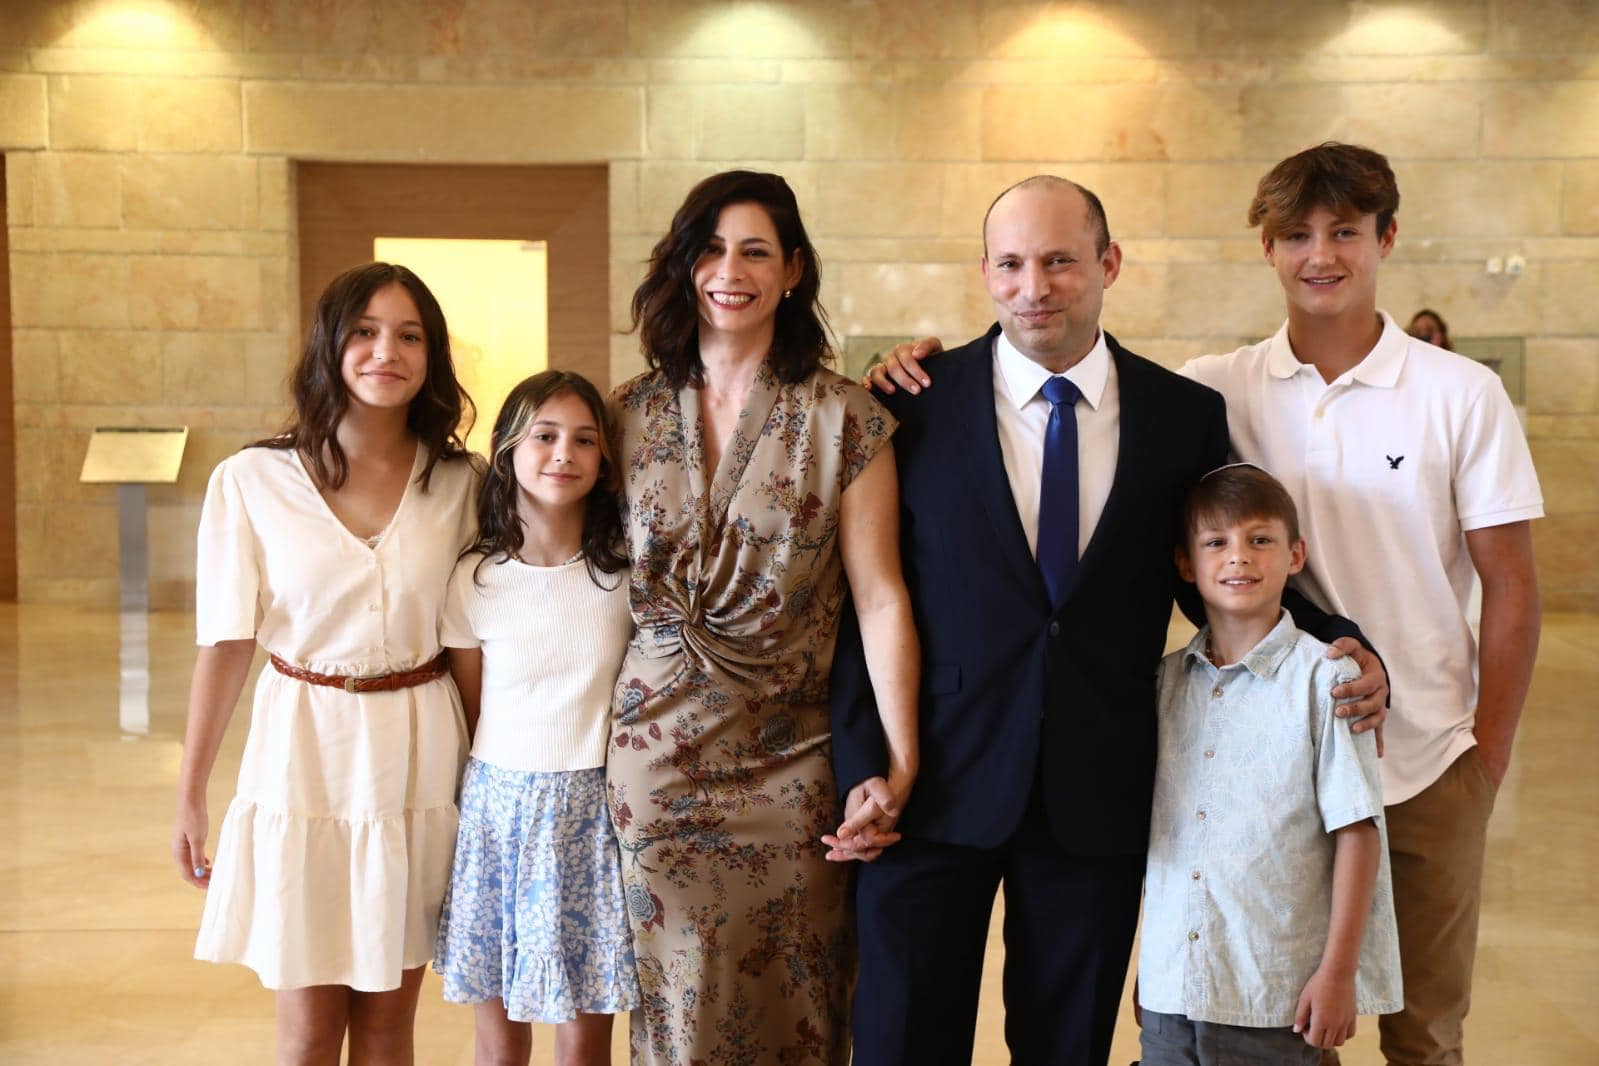 ראש הממשלה נפתלי בנט, אשתו גילת וארבעת ילדיו בכנסת, 13 ביוני 2021 (צילום: מתוך חשבון האינסטגרם של נפתלי בנט)